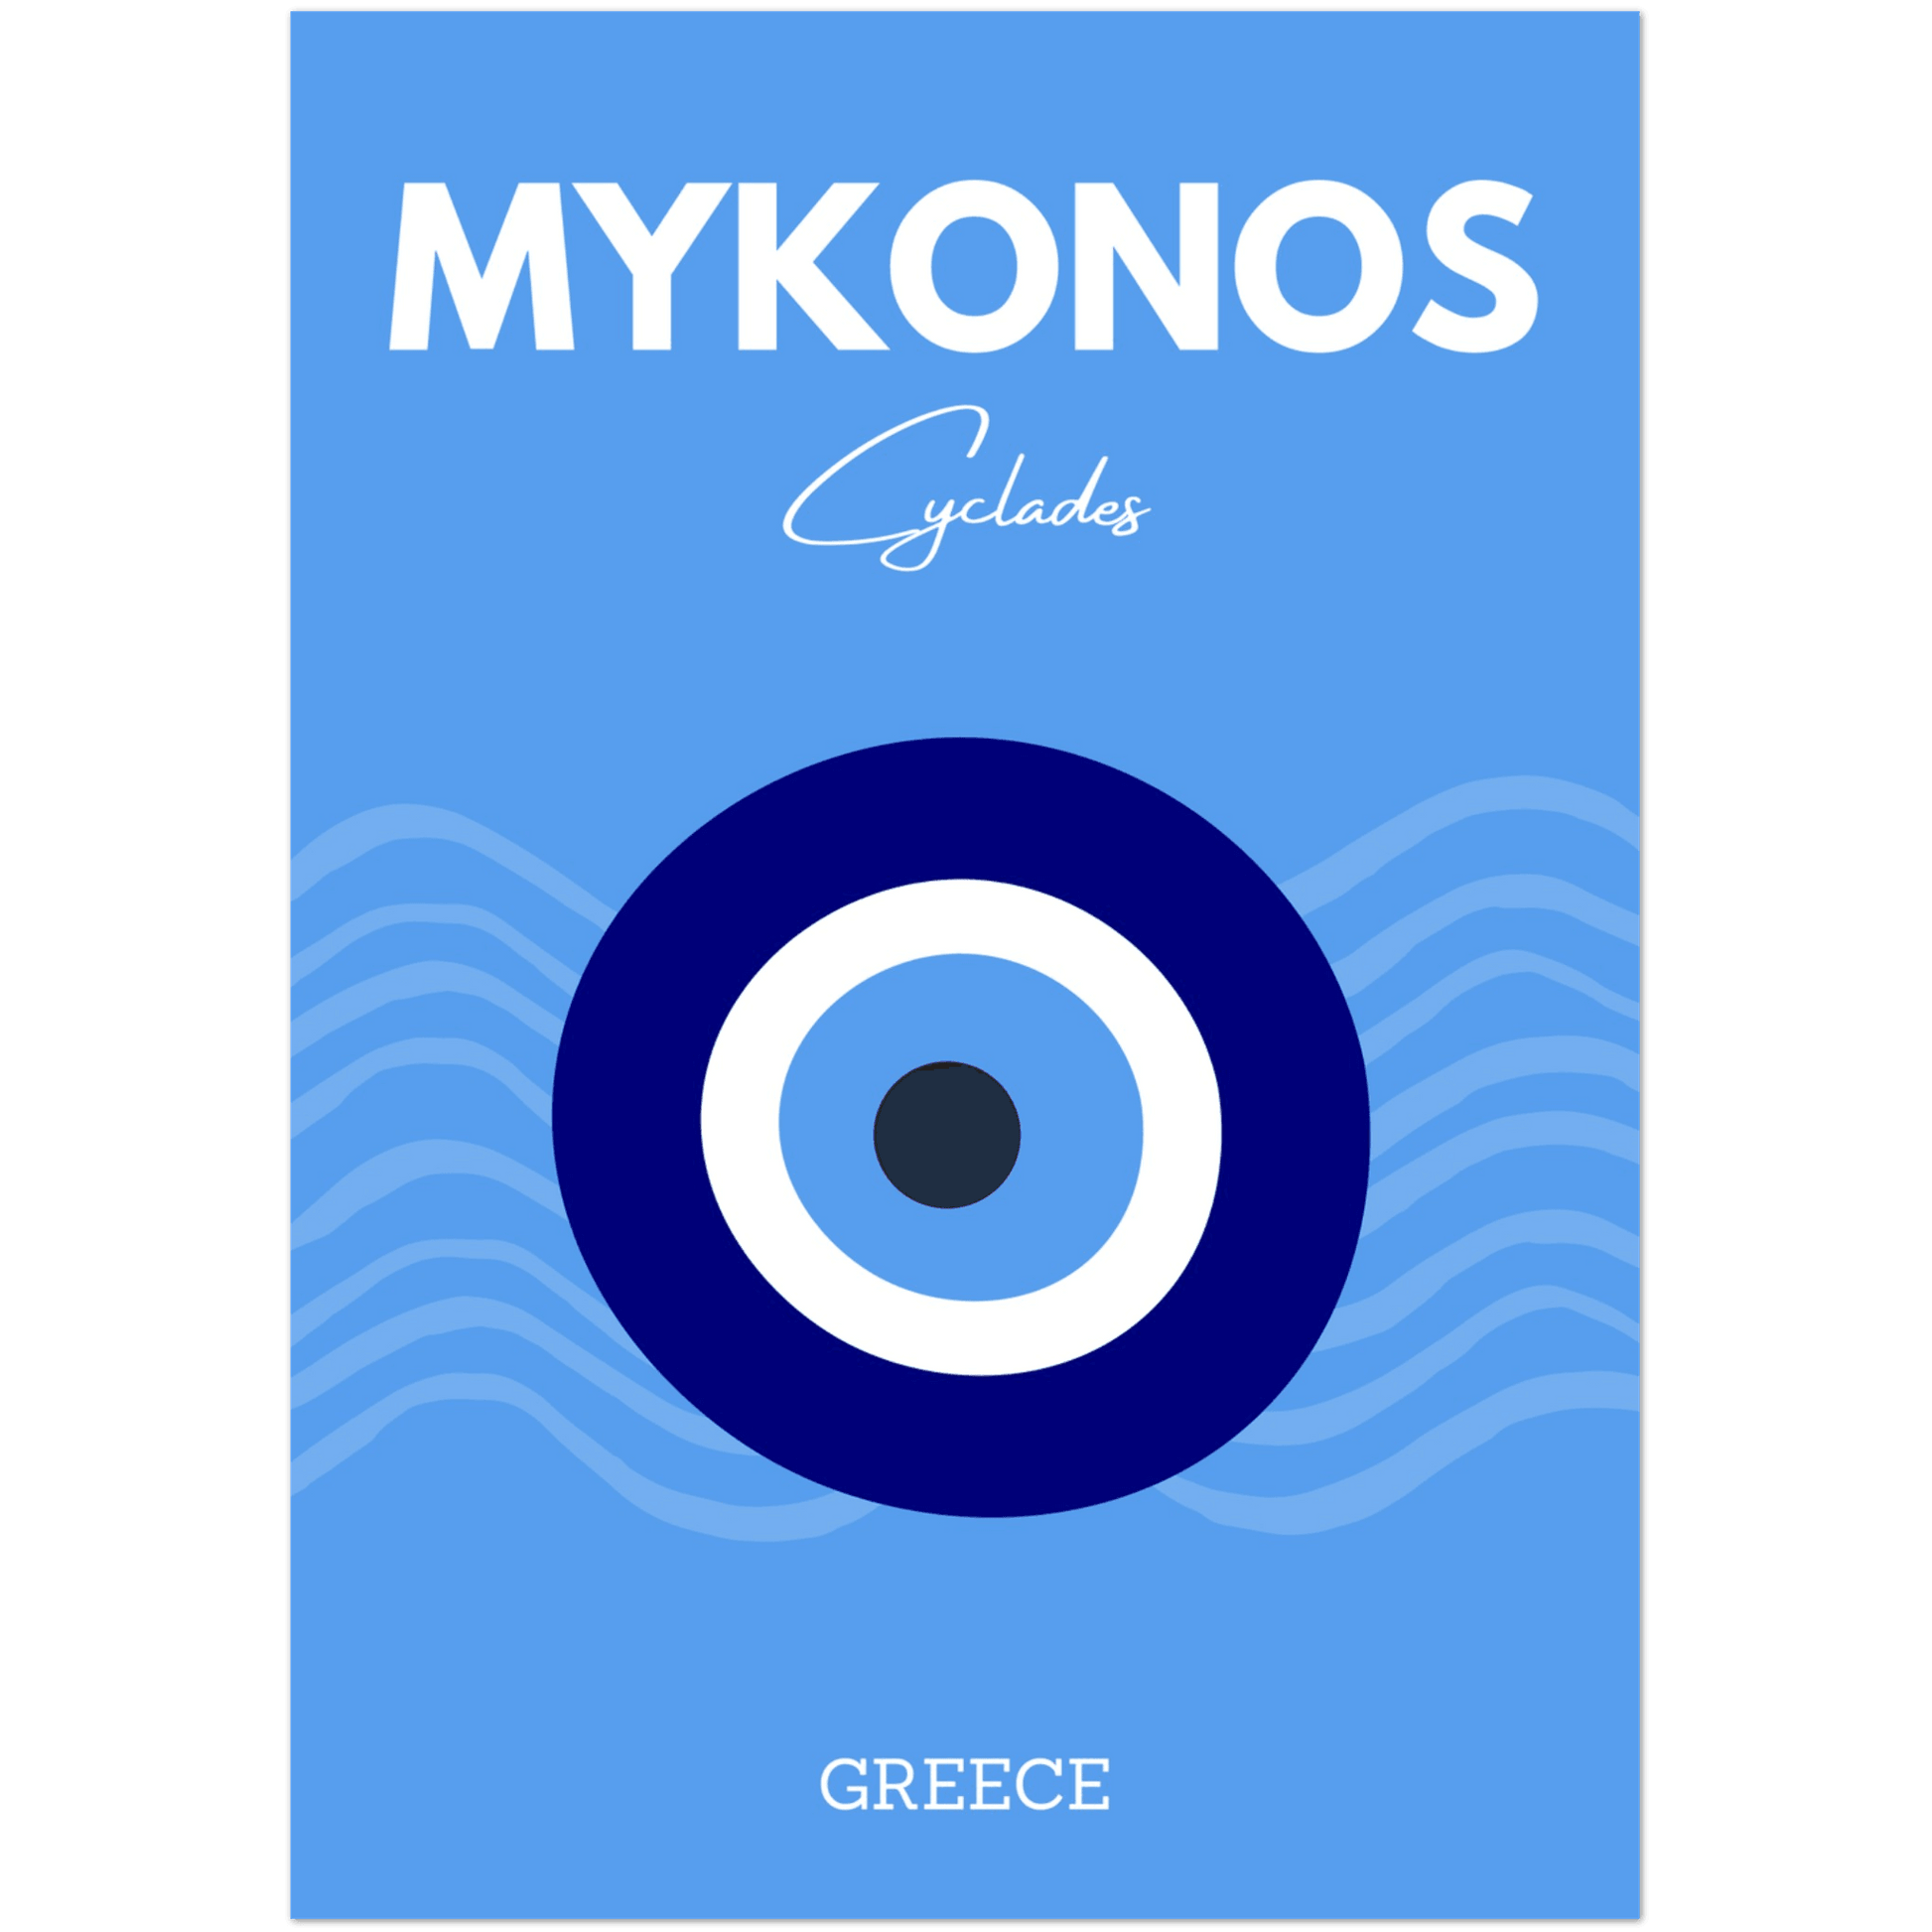 Mykonos - A4, A3, A2 Posters Base - Poster Print Shop / Art Prints / PostersBase